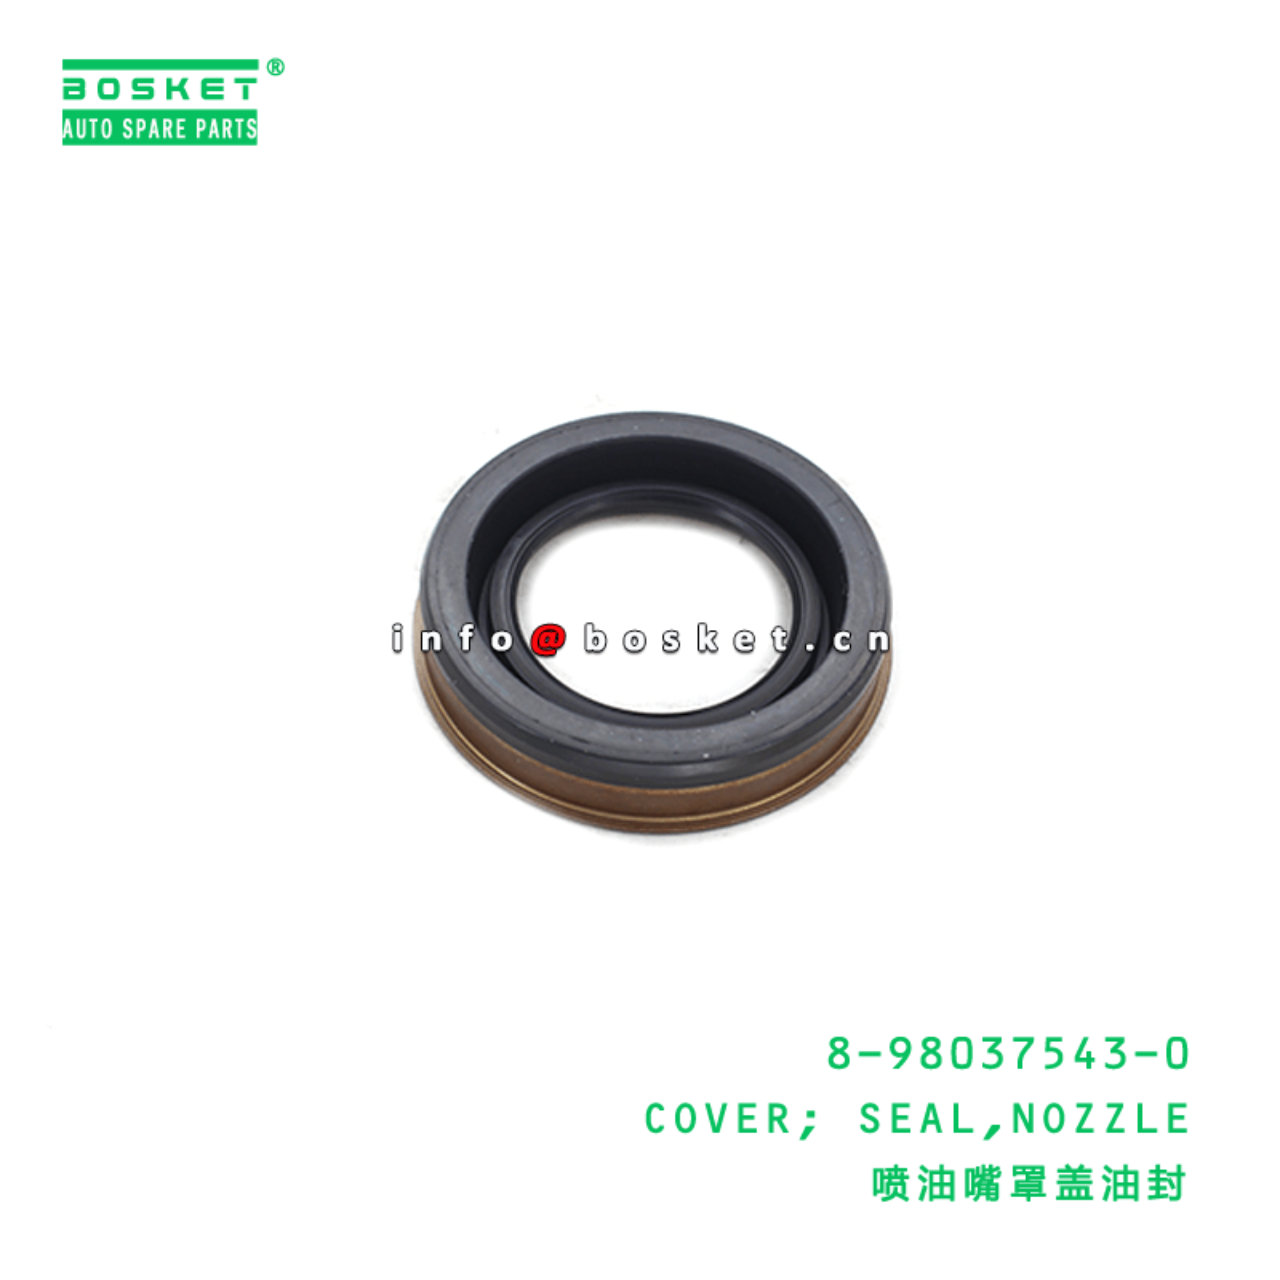 1 PCS New 8980375430 Seal For Sumitomo SH130-5 